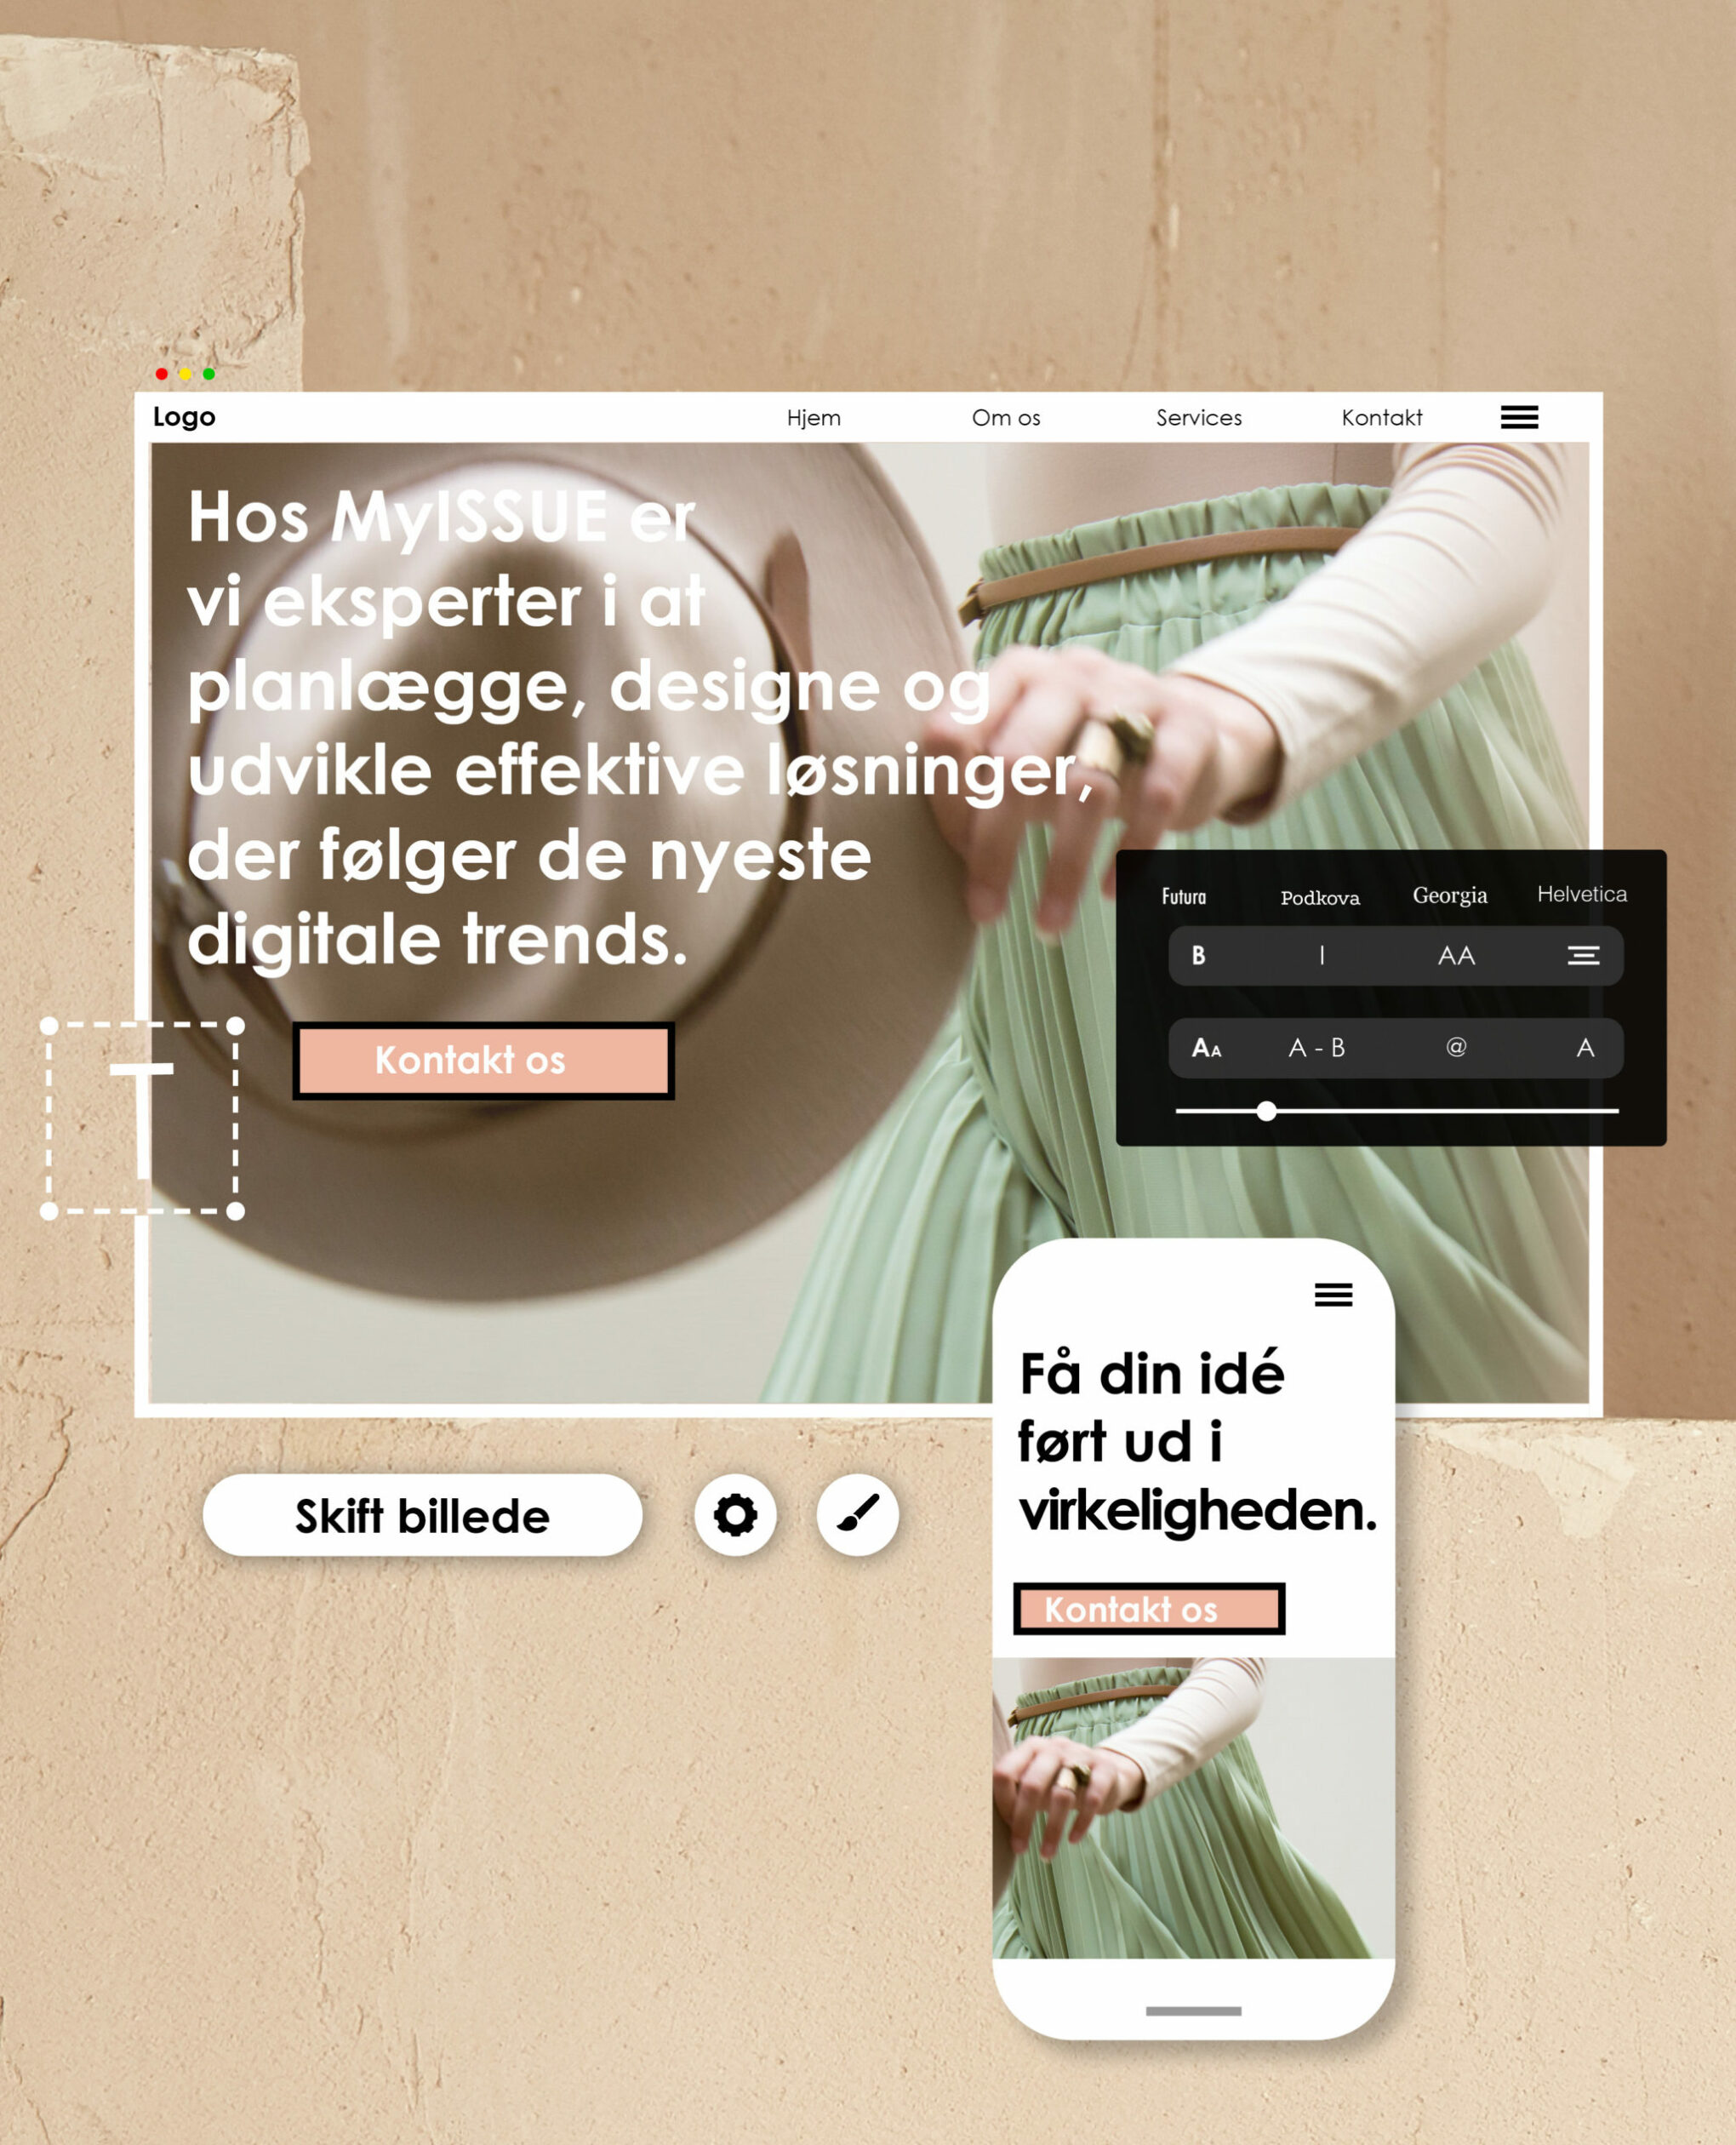 launch ny hjemmeside med myissue.dk ny